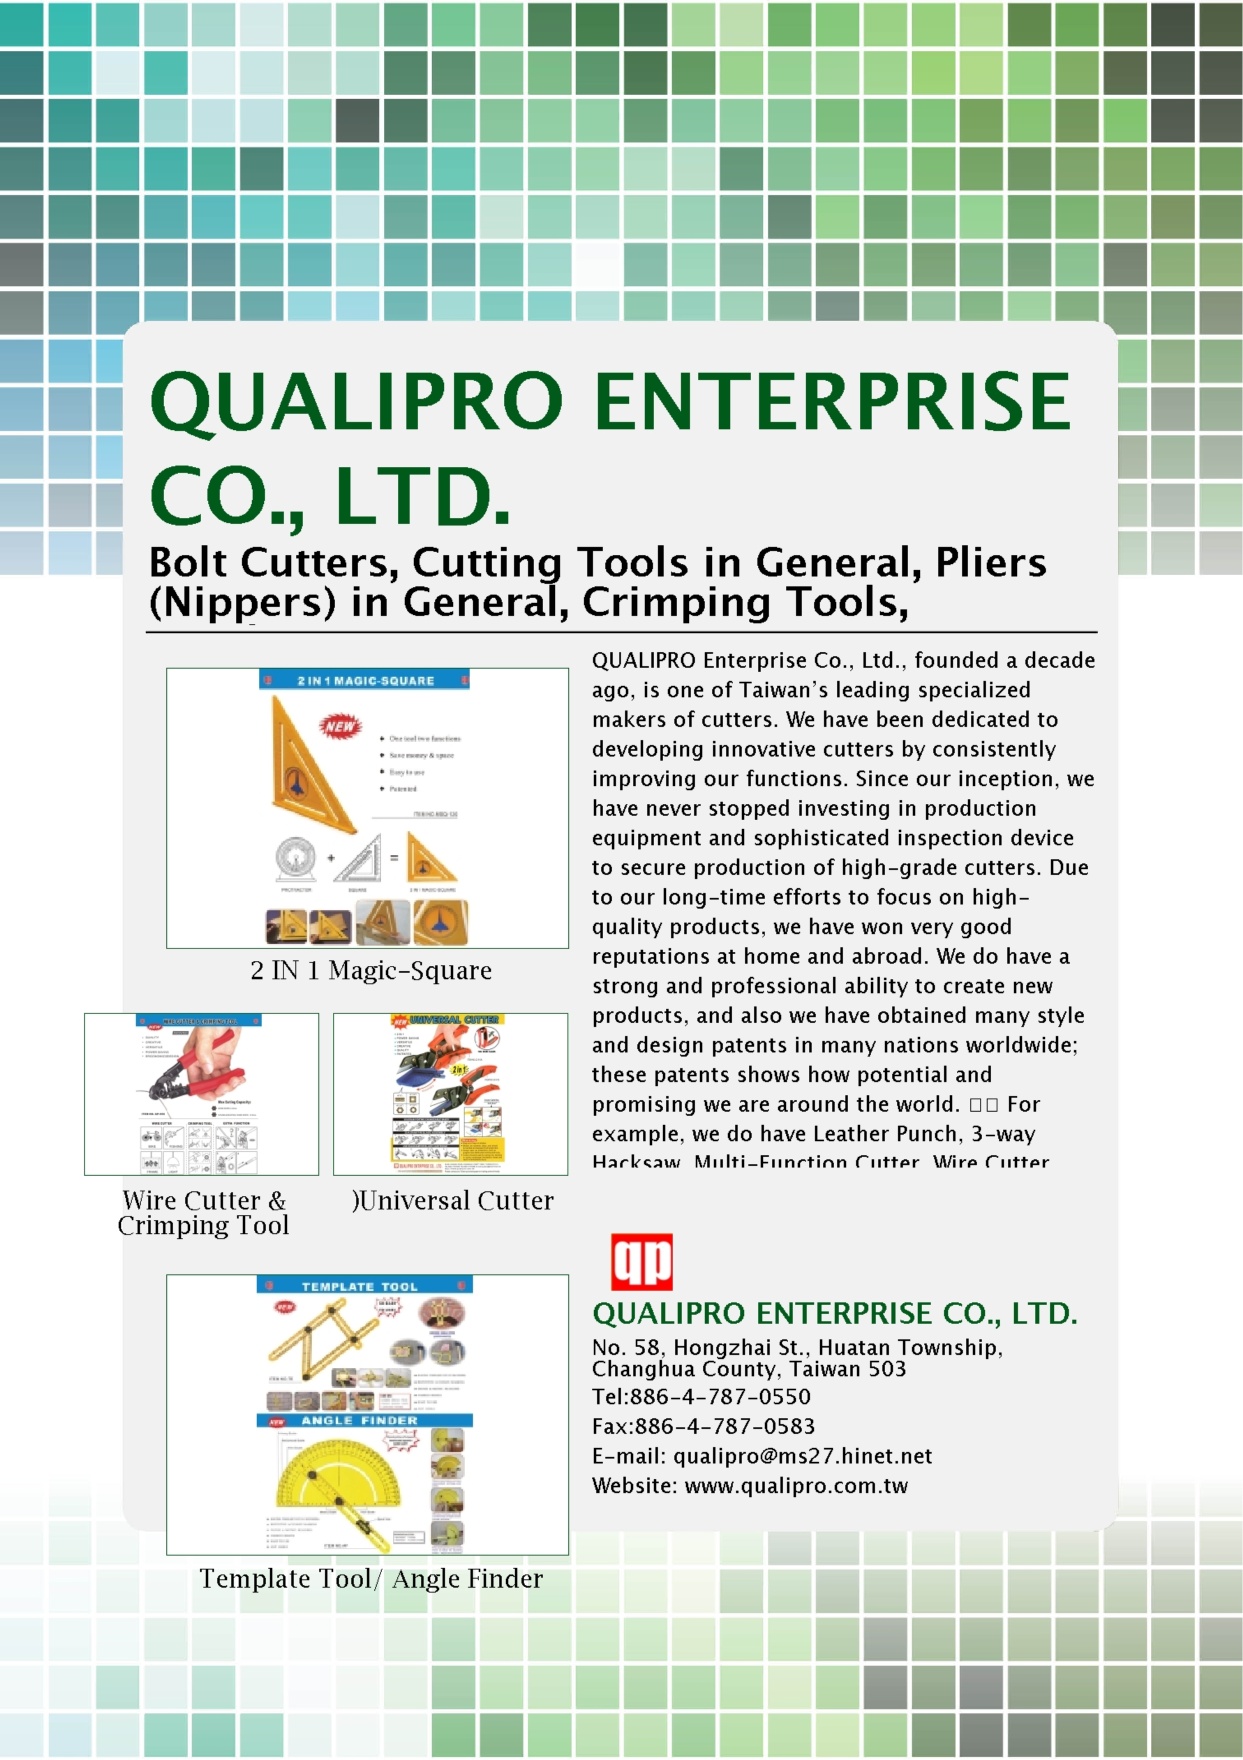 QUALIPRO ENTERPRISE CO., LTD.